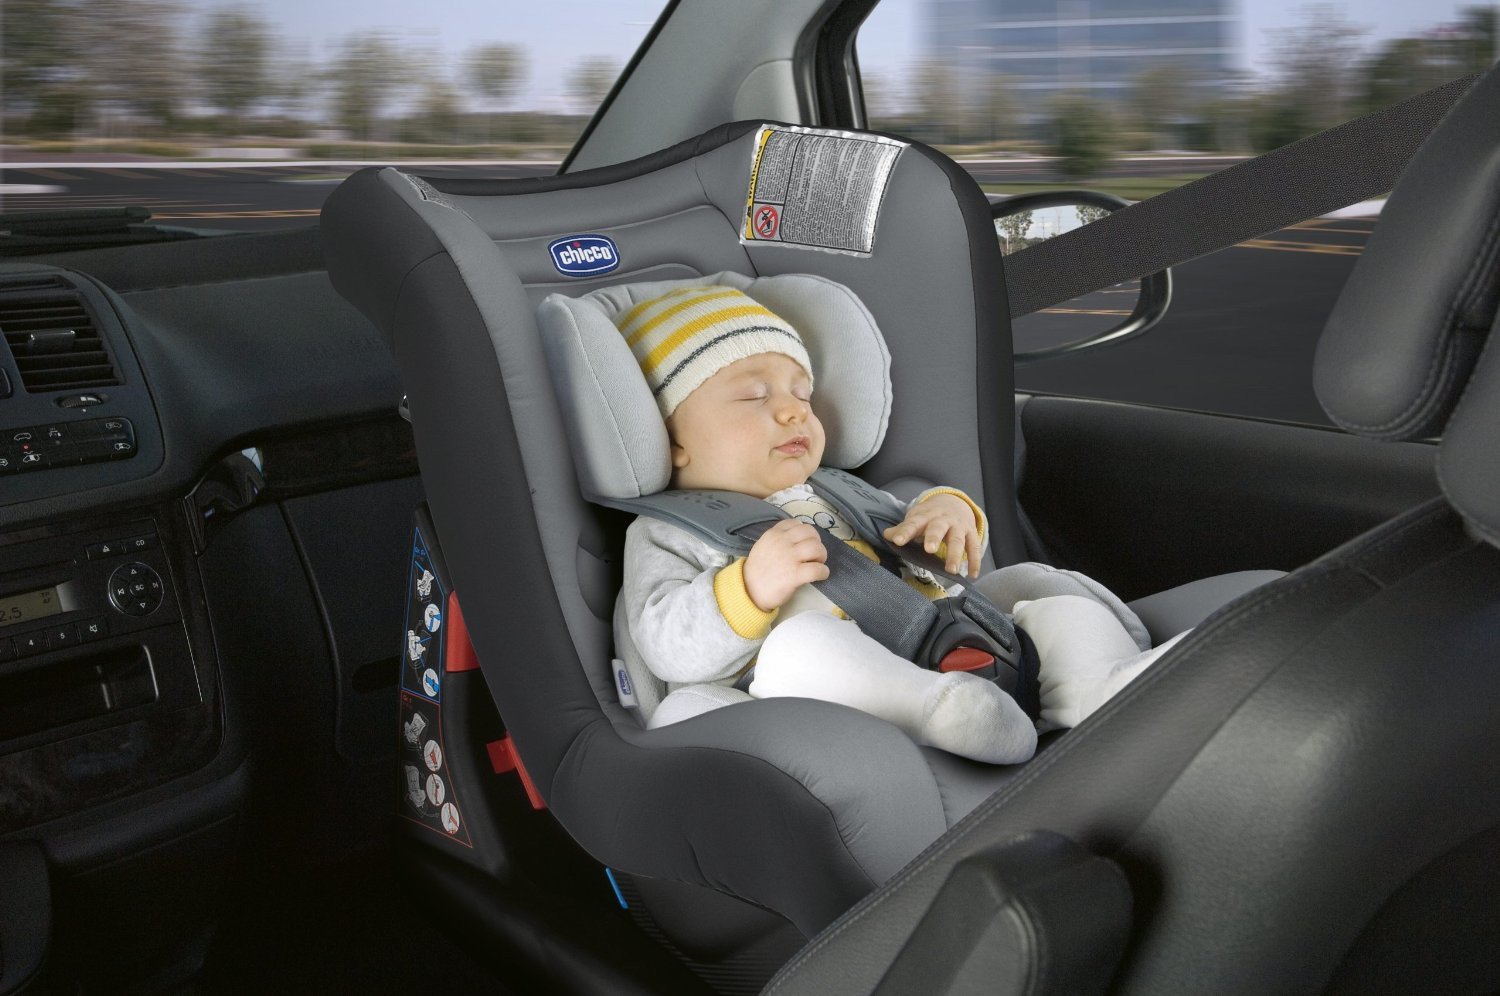 Можно автолюльку ставить на переднее сидение. Кресло для детей в машину. Кресло для младенца в машину. Сиденье в машину для новорожденного. Автокресло для новорожденных в автомобиле.